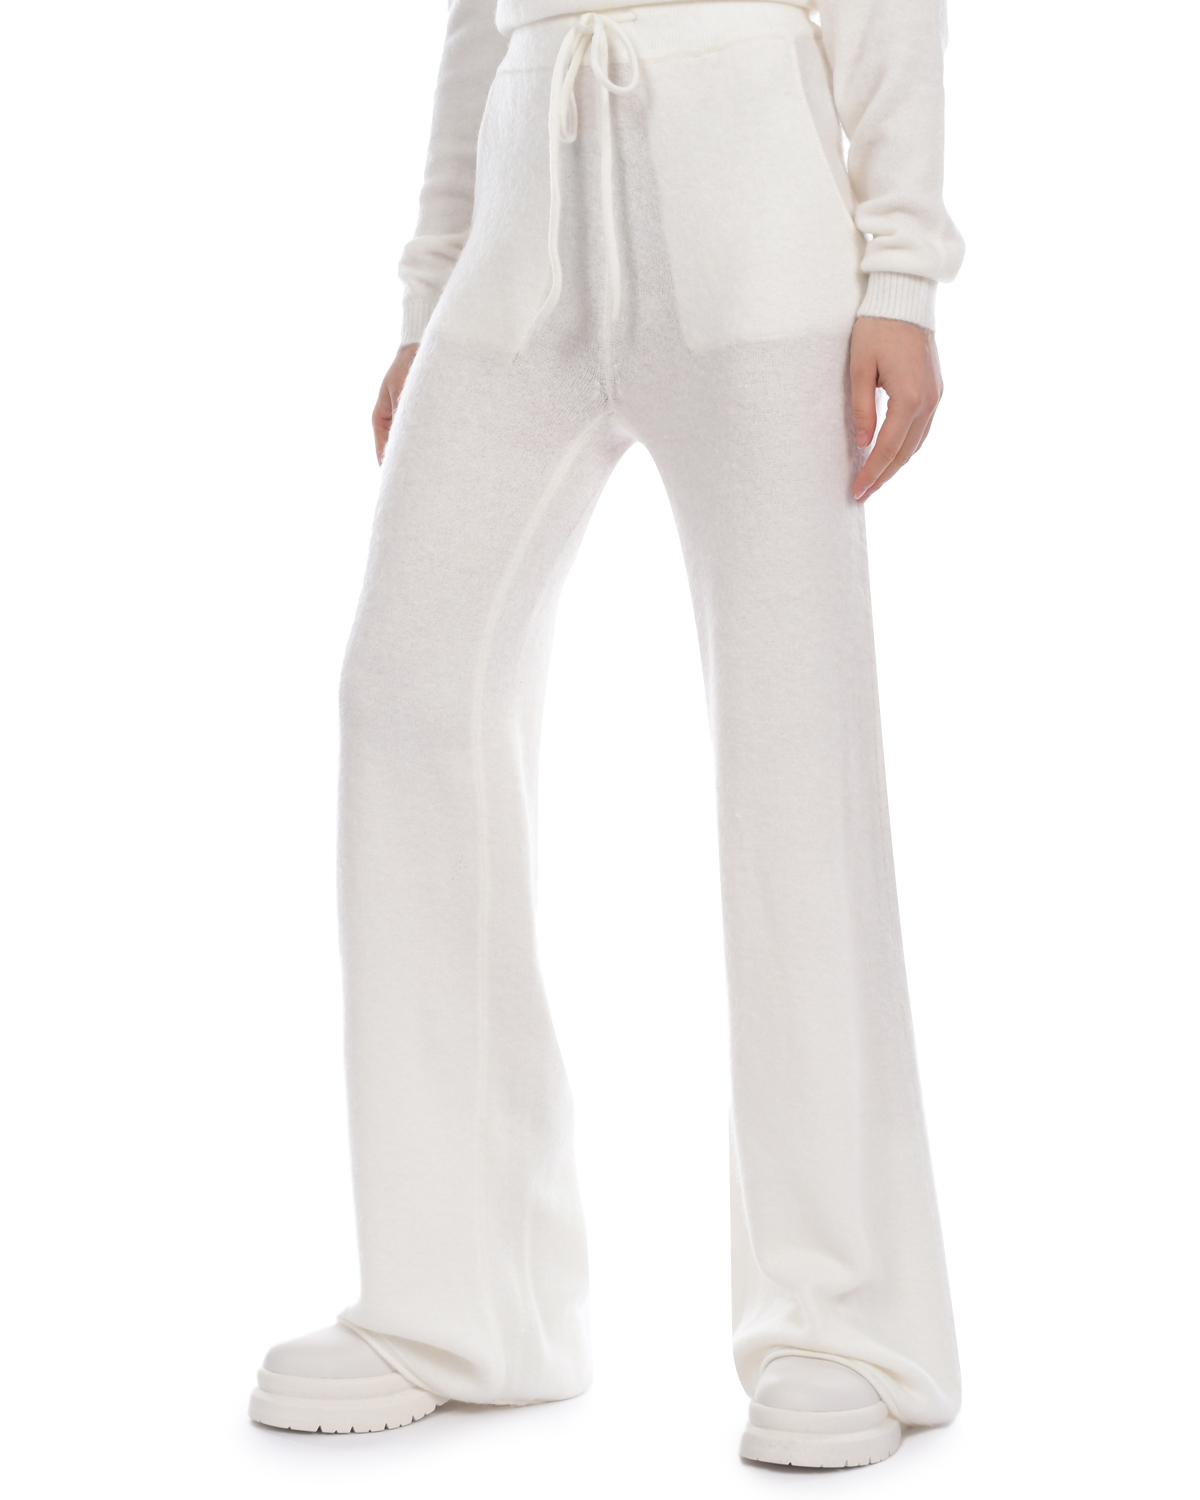 Белые трикотажные брюки Deha, размер 38, цвет белый - фото 6